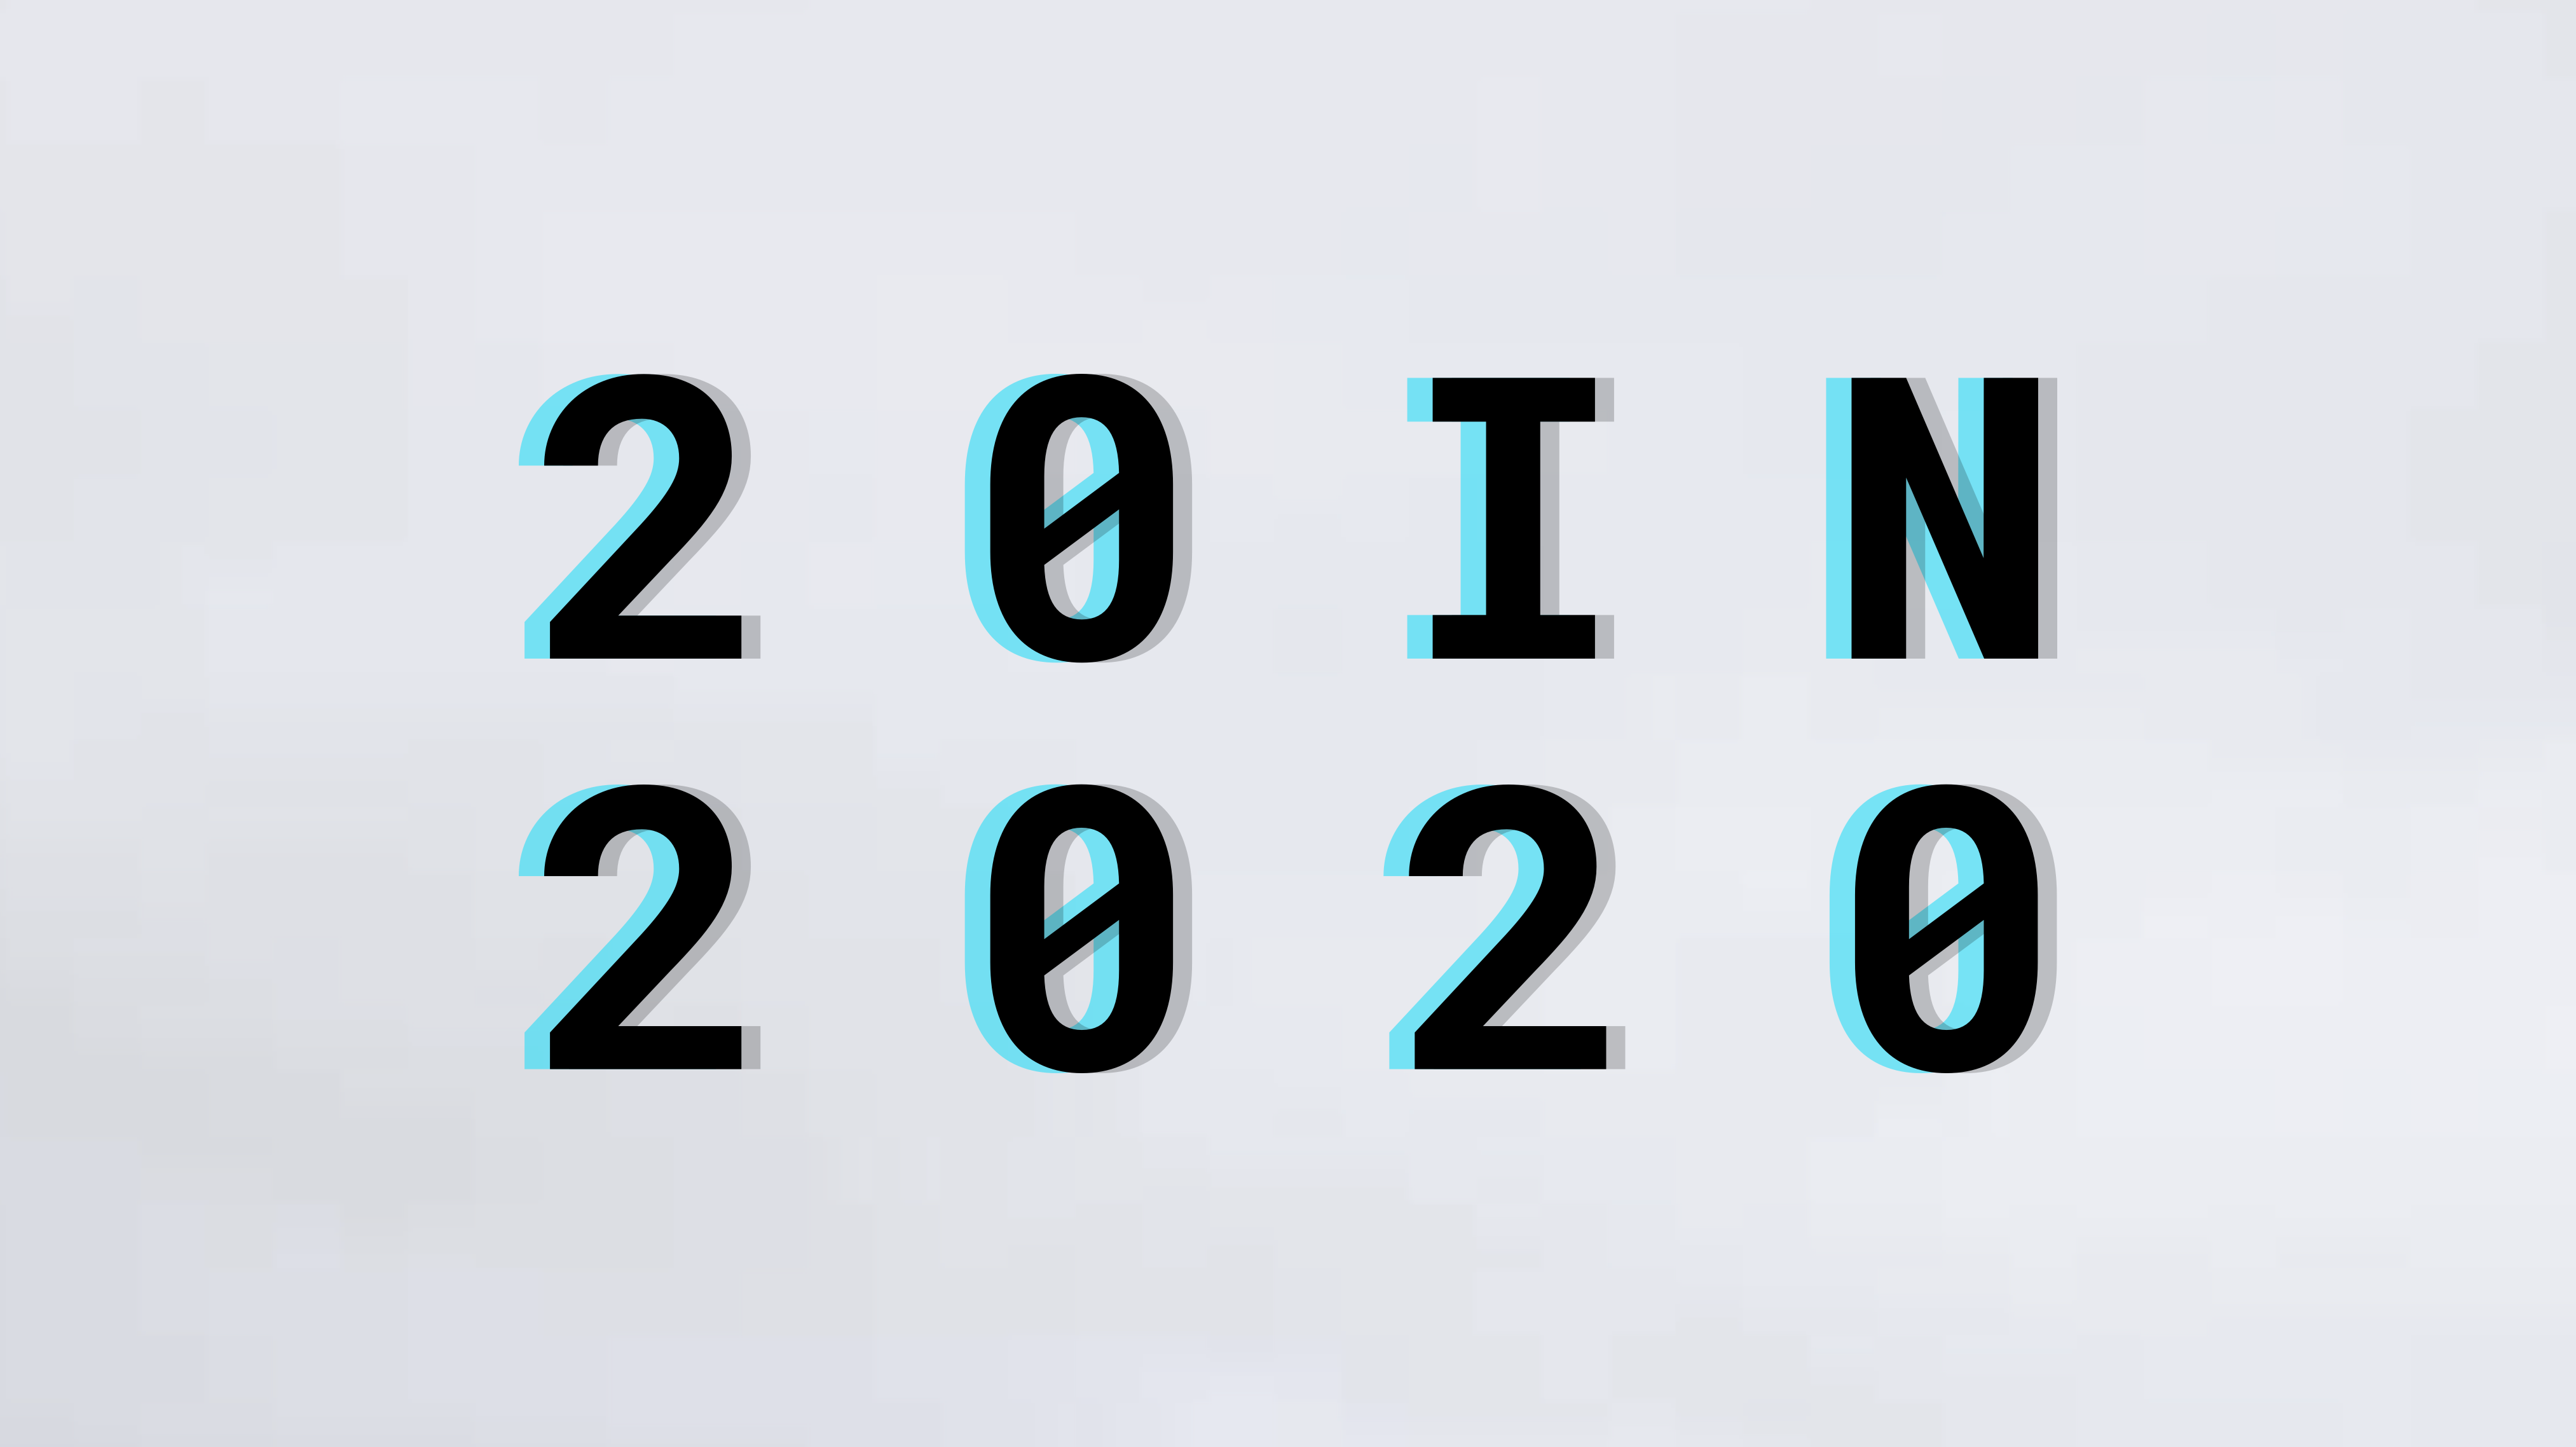 20 in 2020